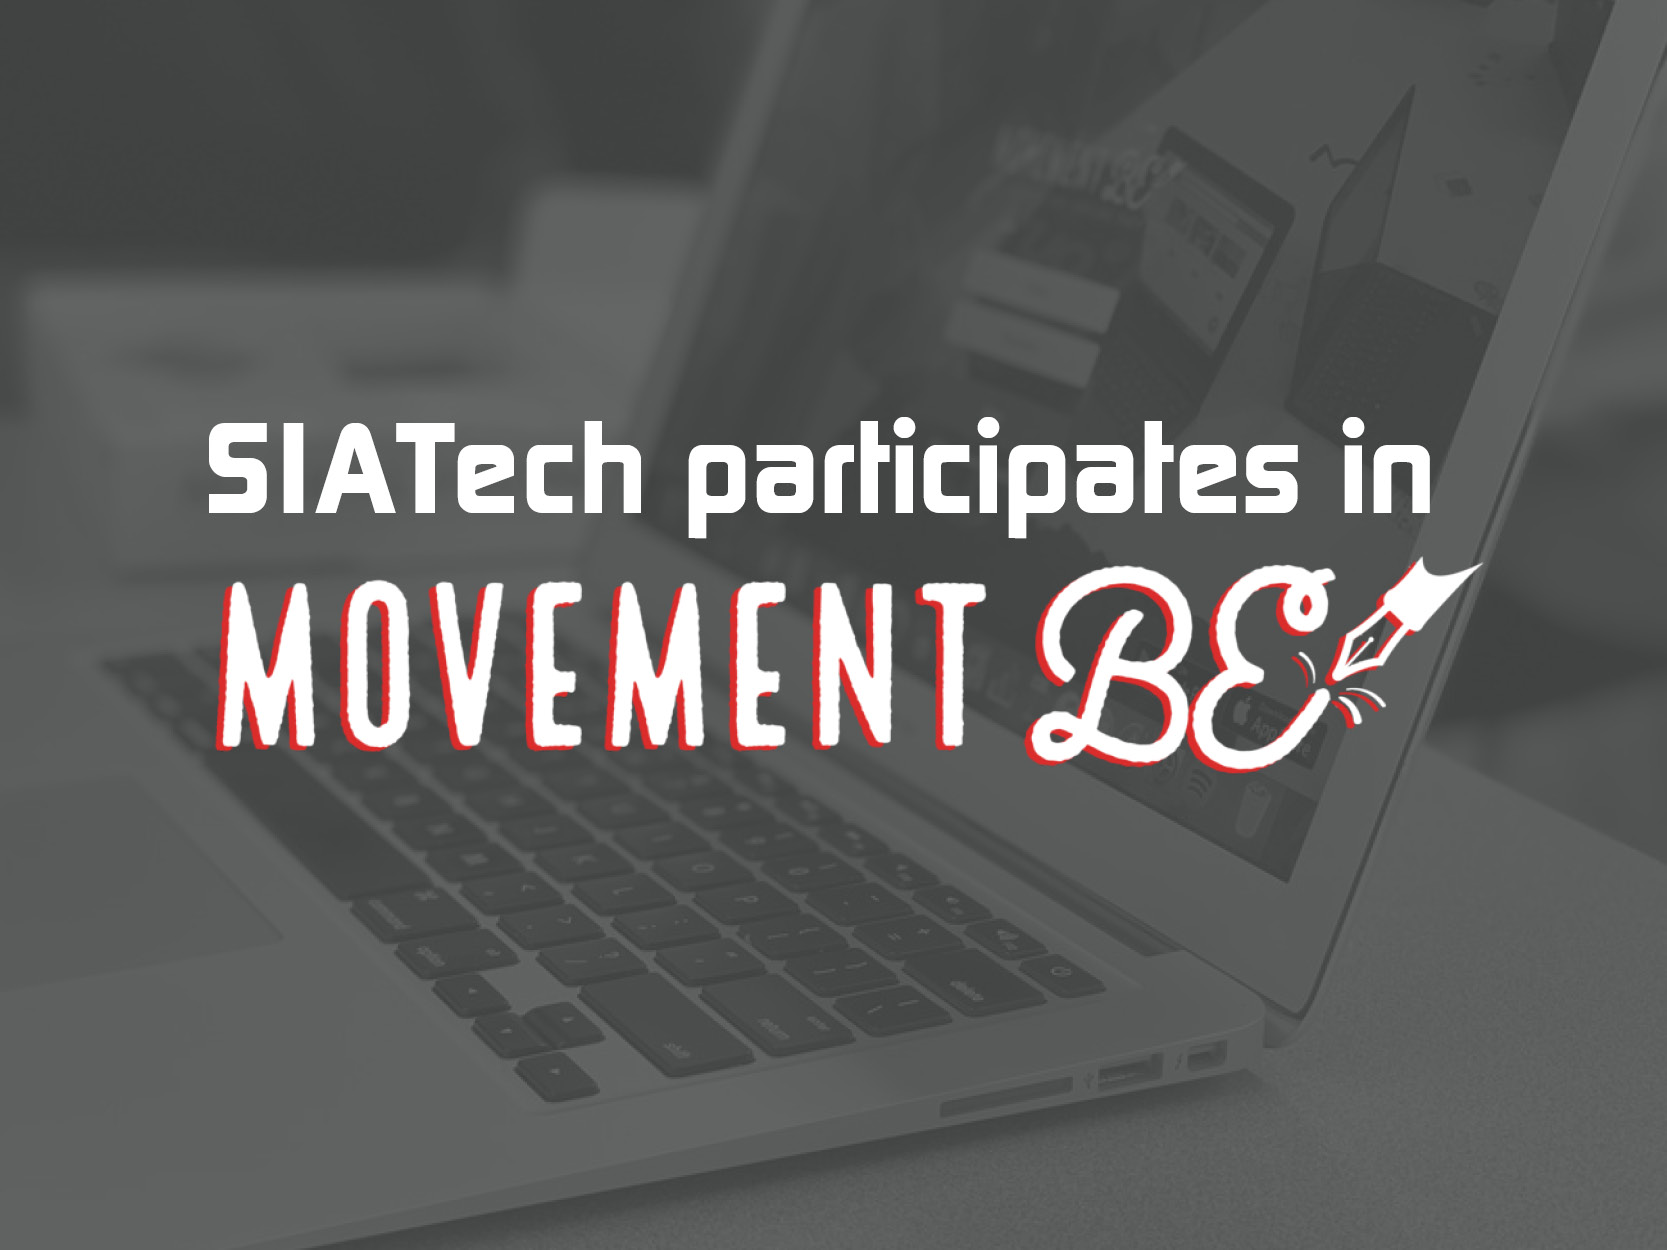 siatech participates in Movement BE